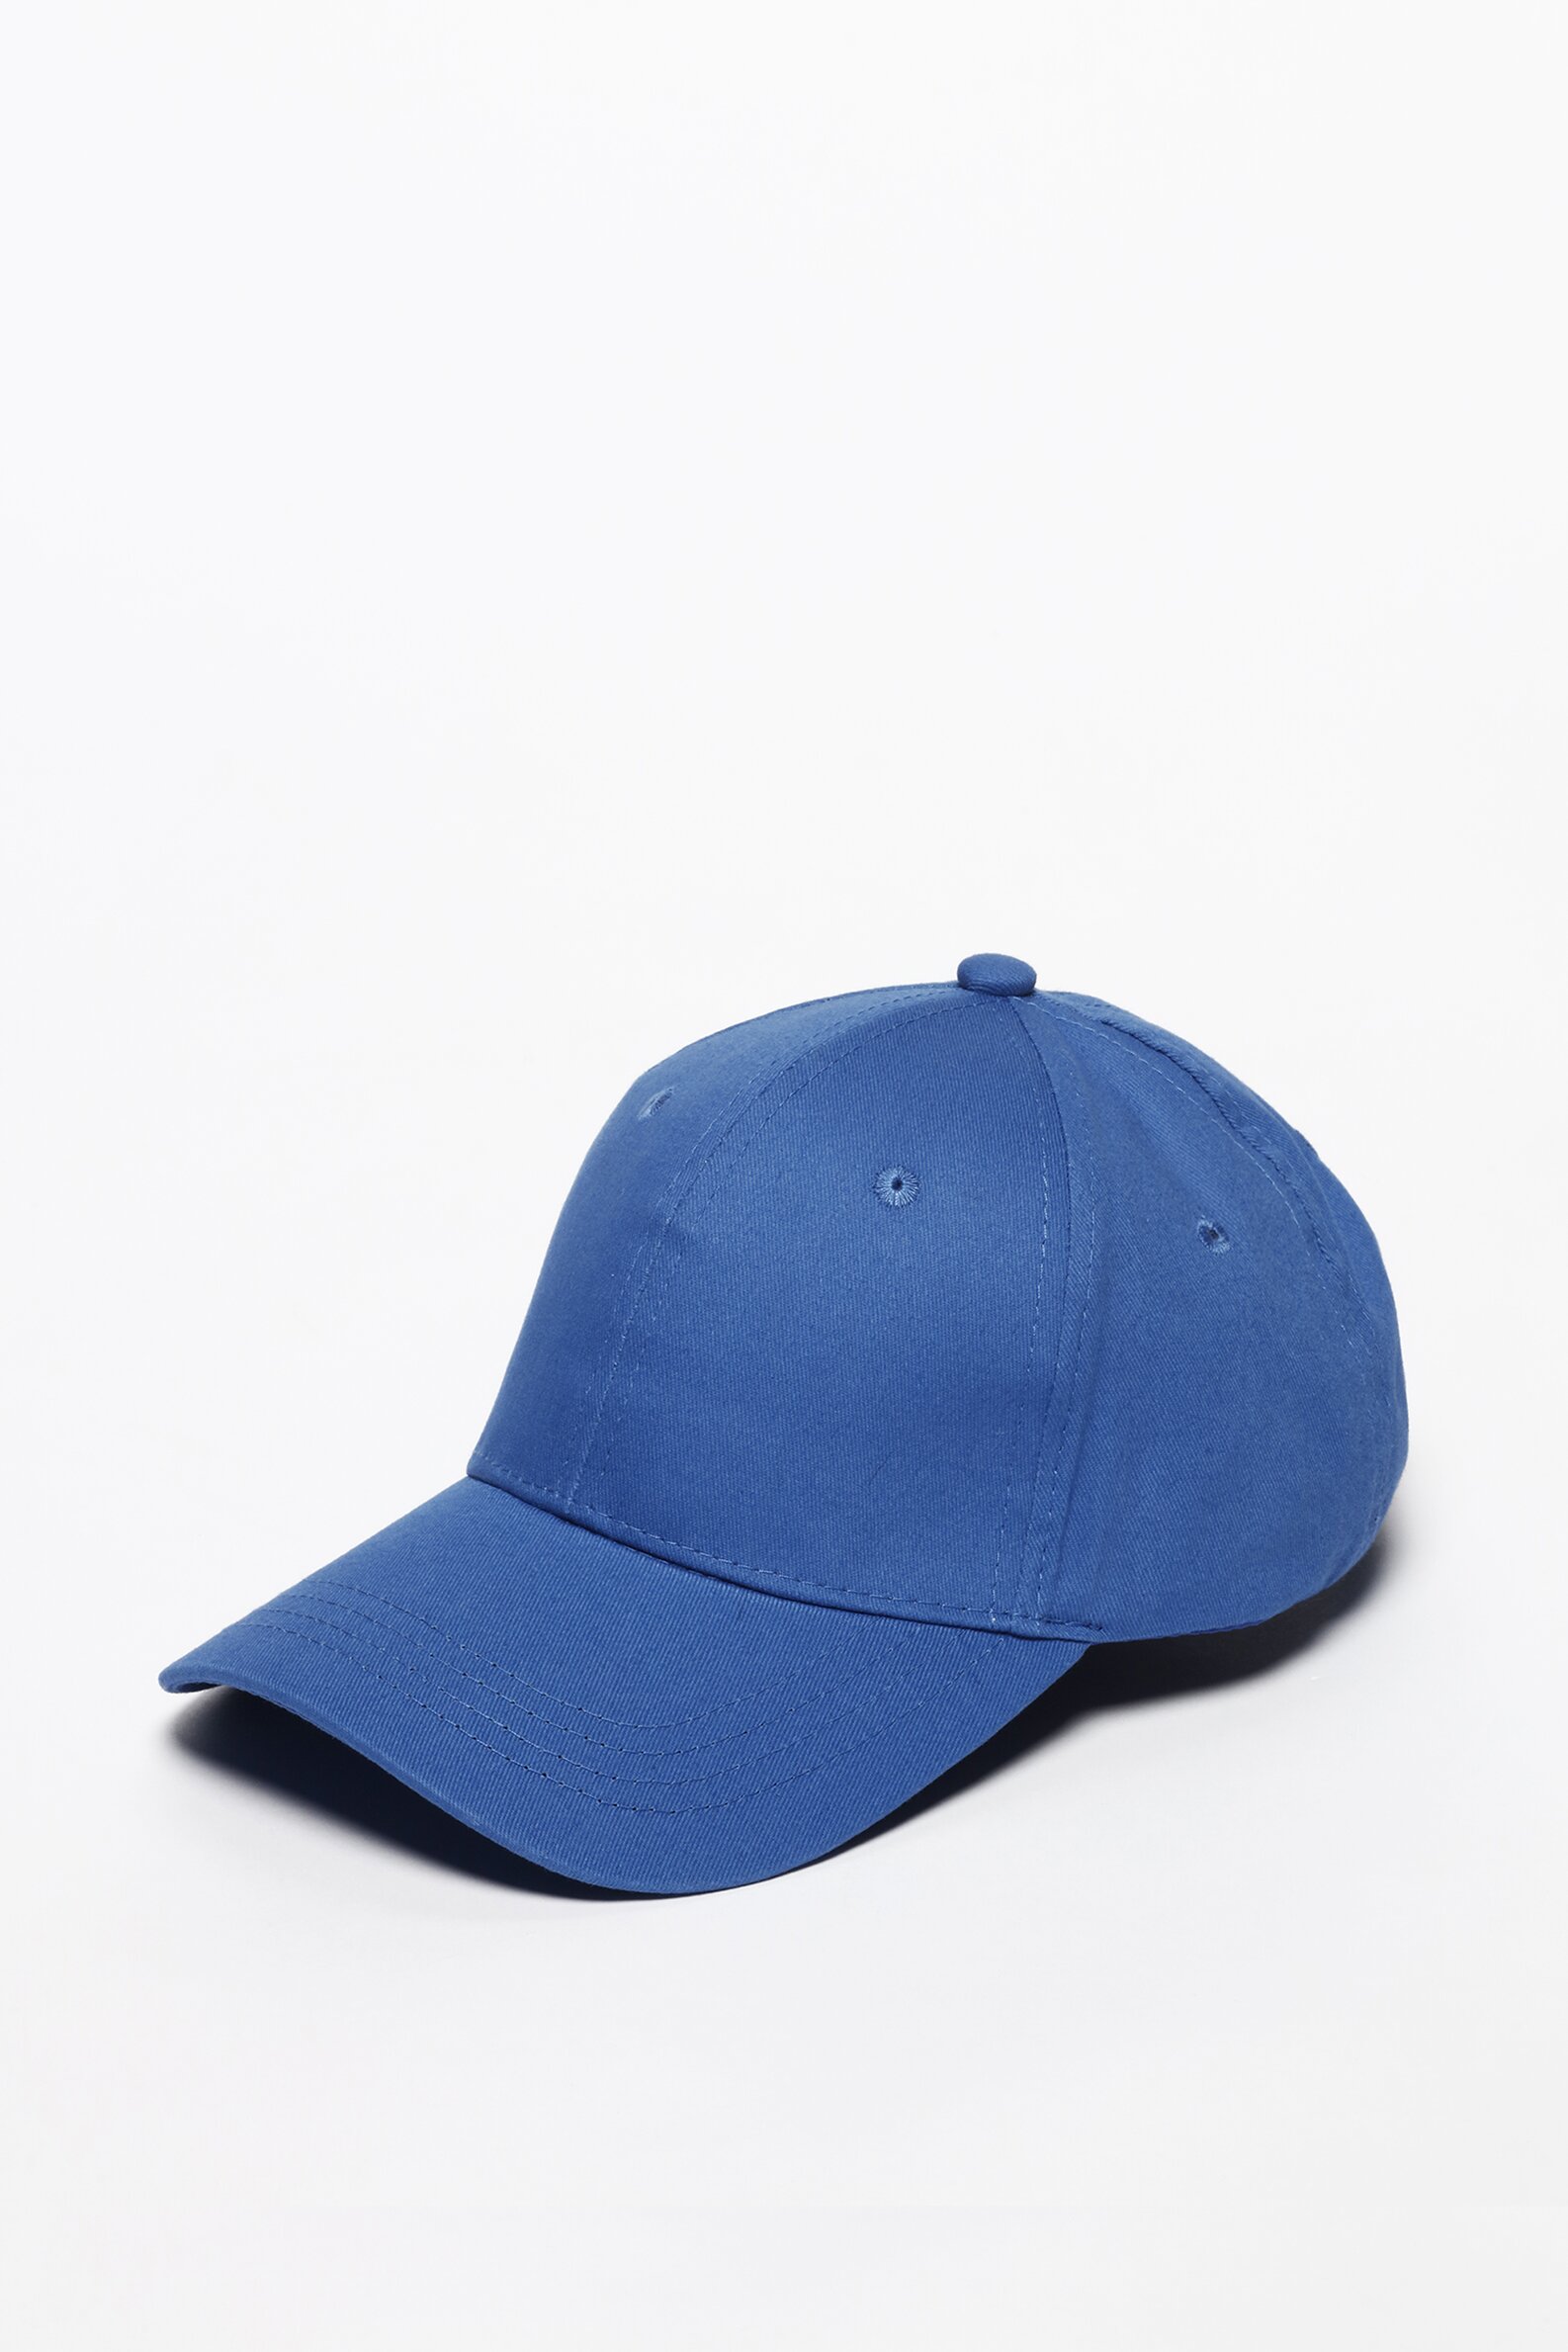 CAP - 帽子